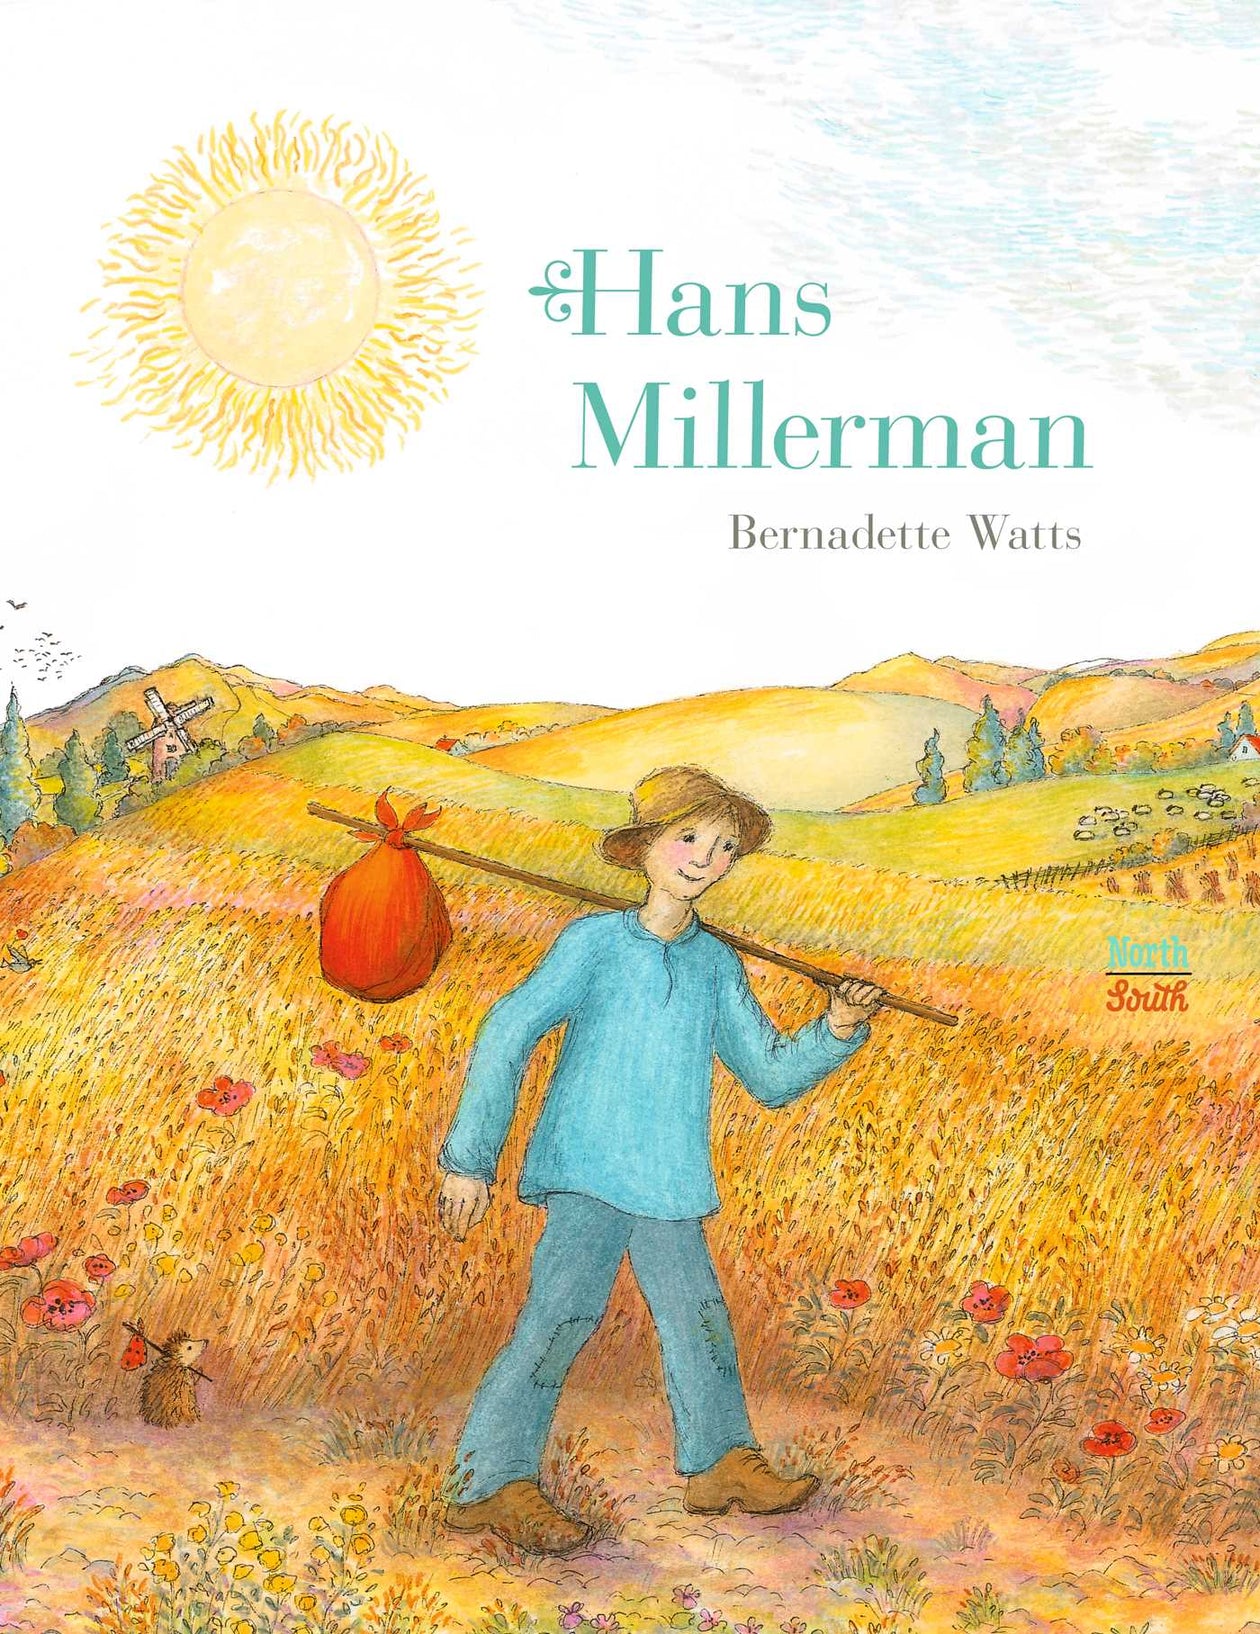 Hans Millerman by Bernadette Watts